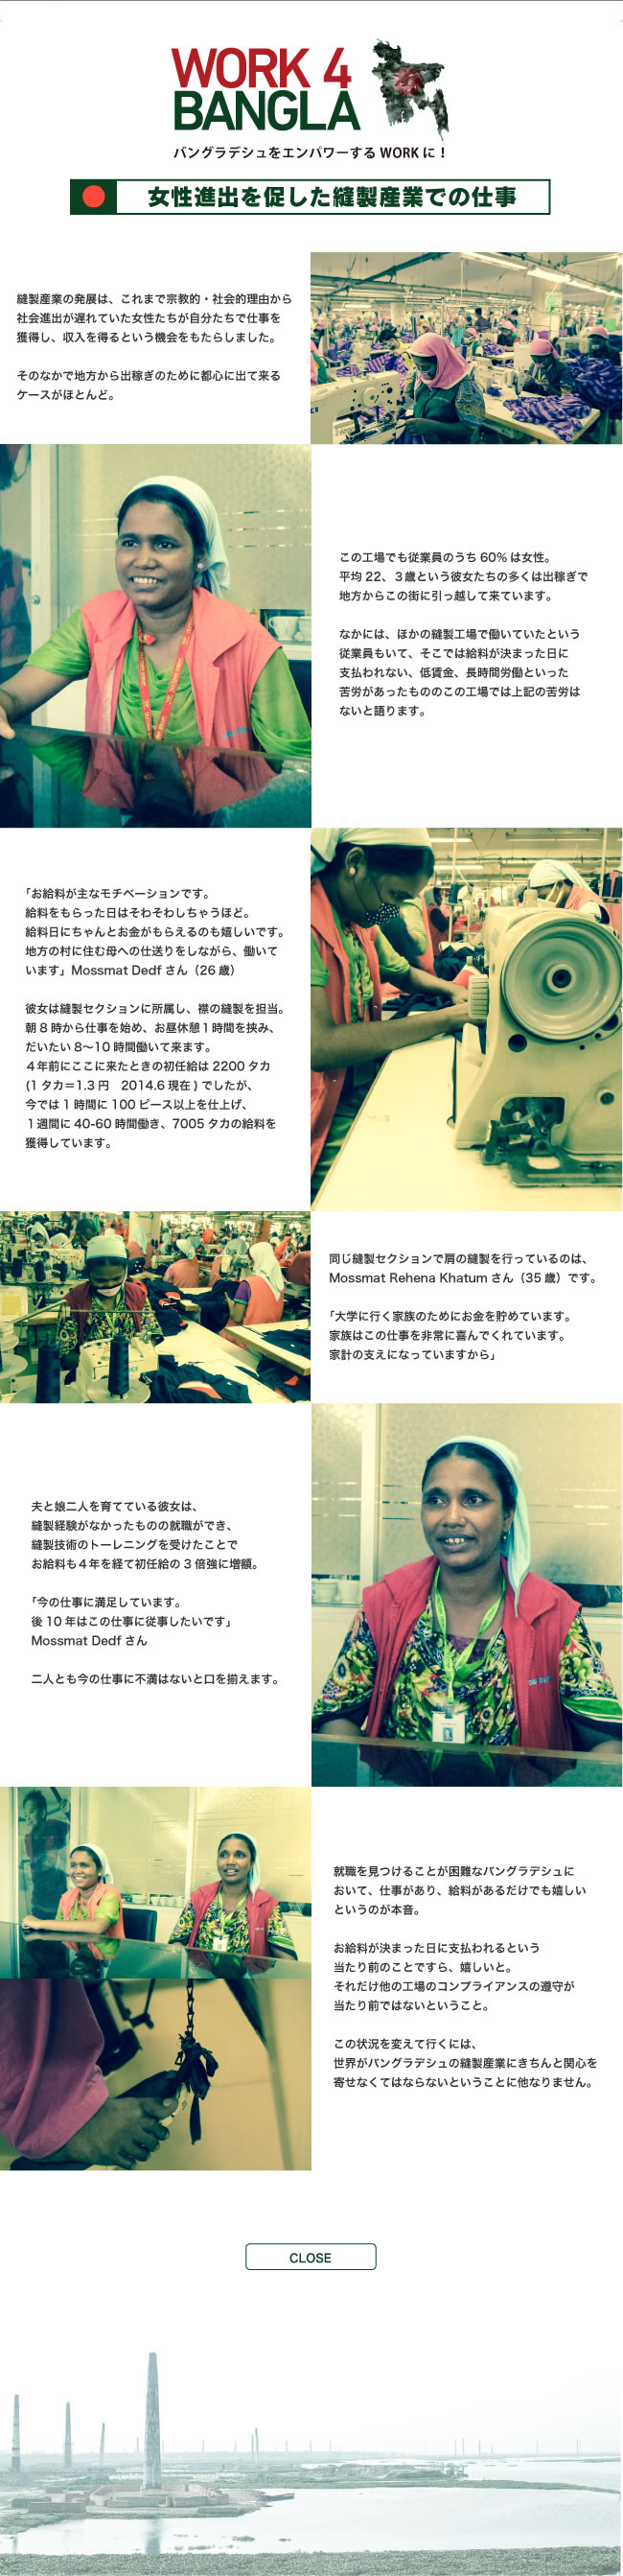 女性進出を促した縫製産業での仕事